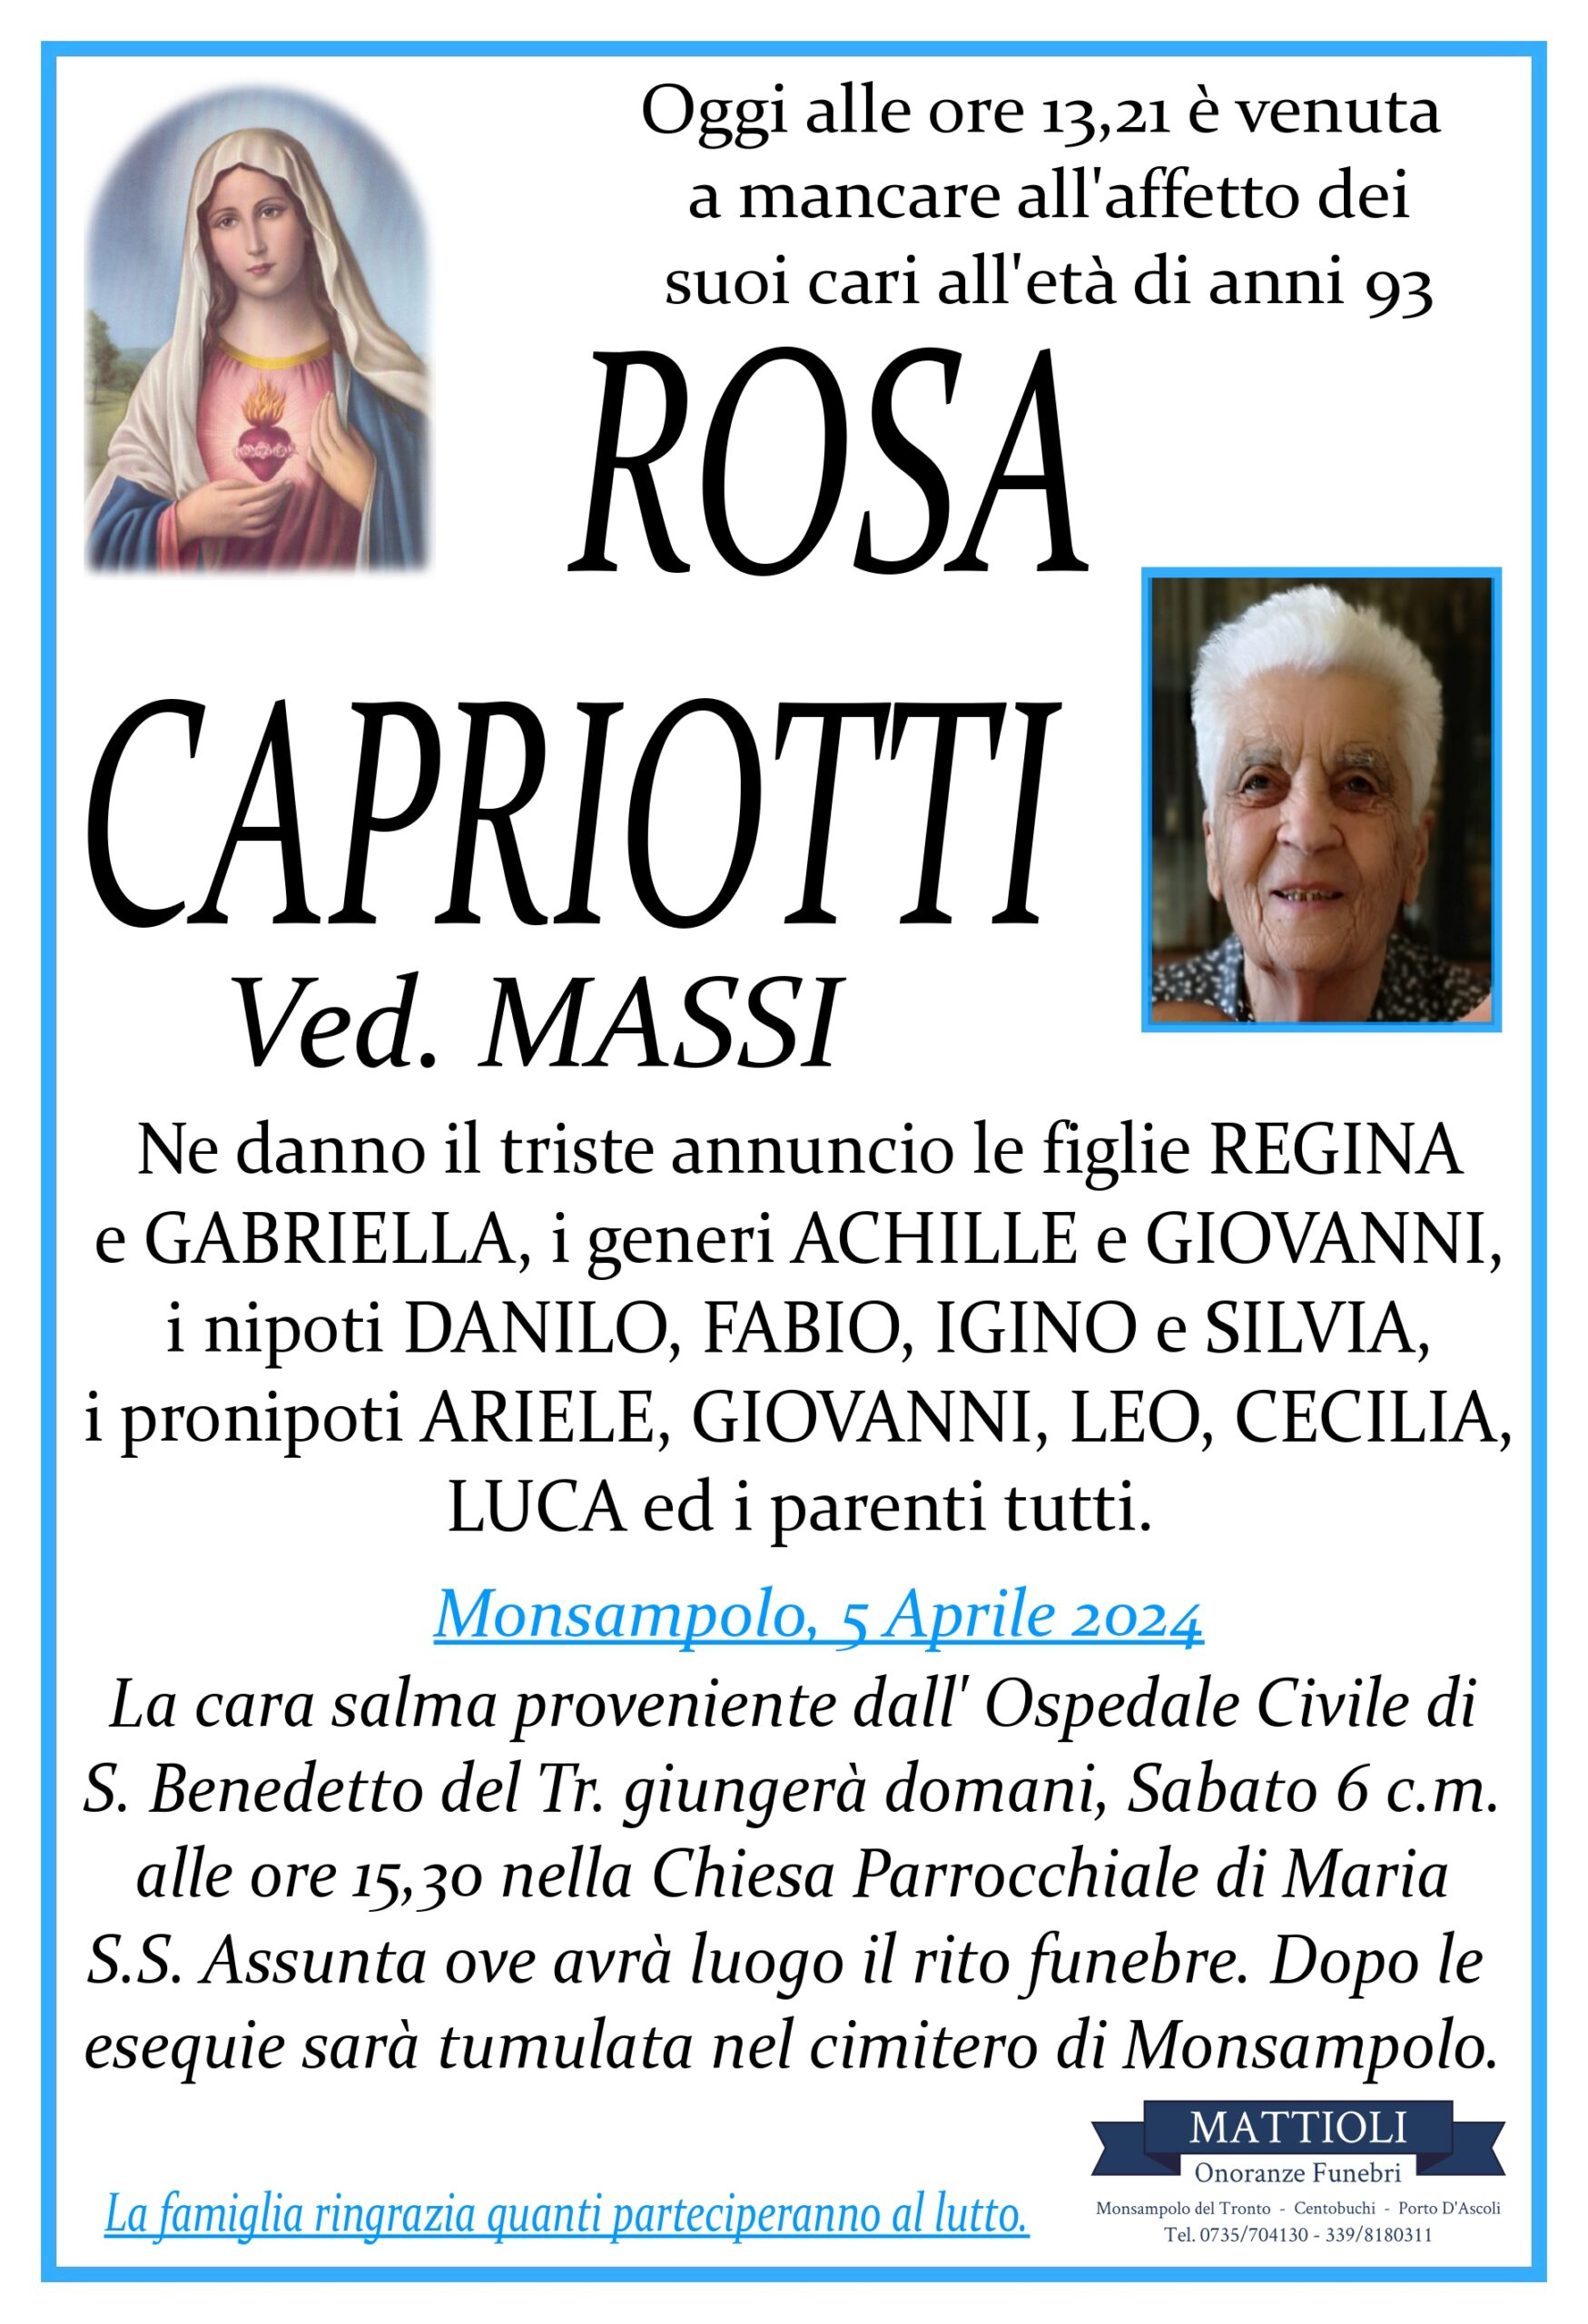 Rosa Capriotti